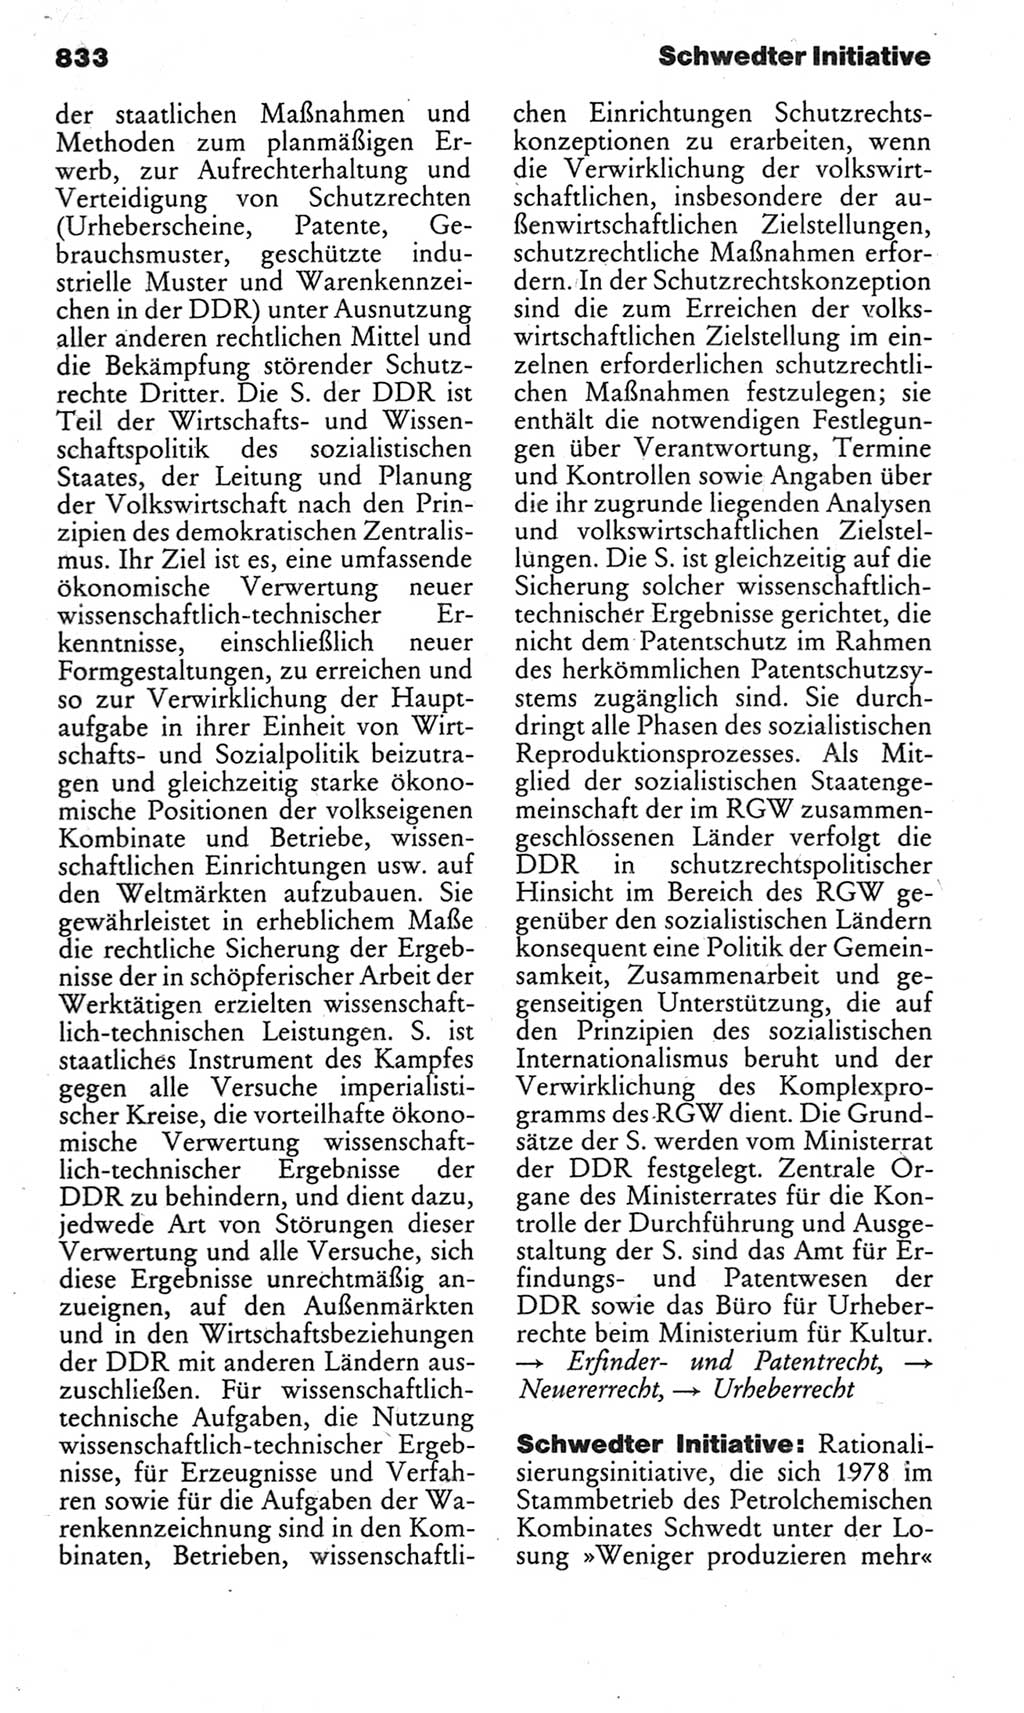 Kleines politisches Wörterbuch [Deutsche Demokratische Republik (DDR)] 1983, Seite 833 (Kl. pol. Wb. DDR 1983, S. 833)